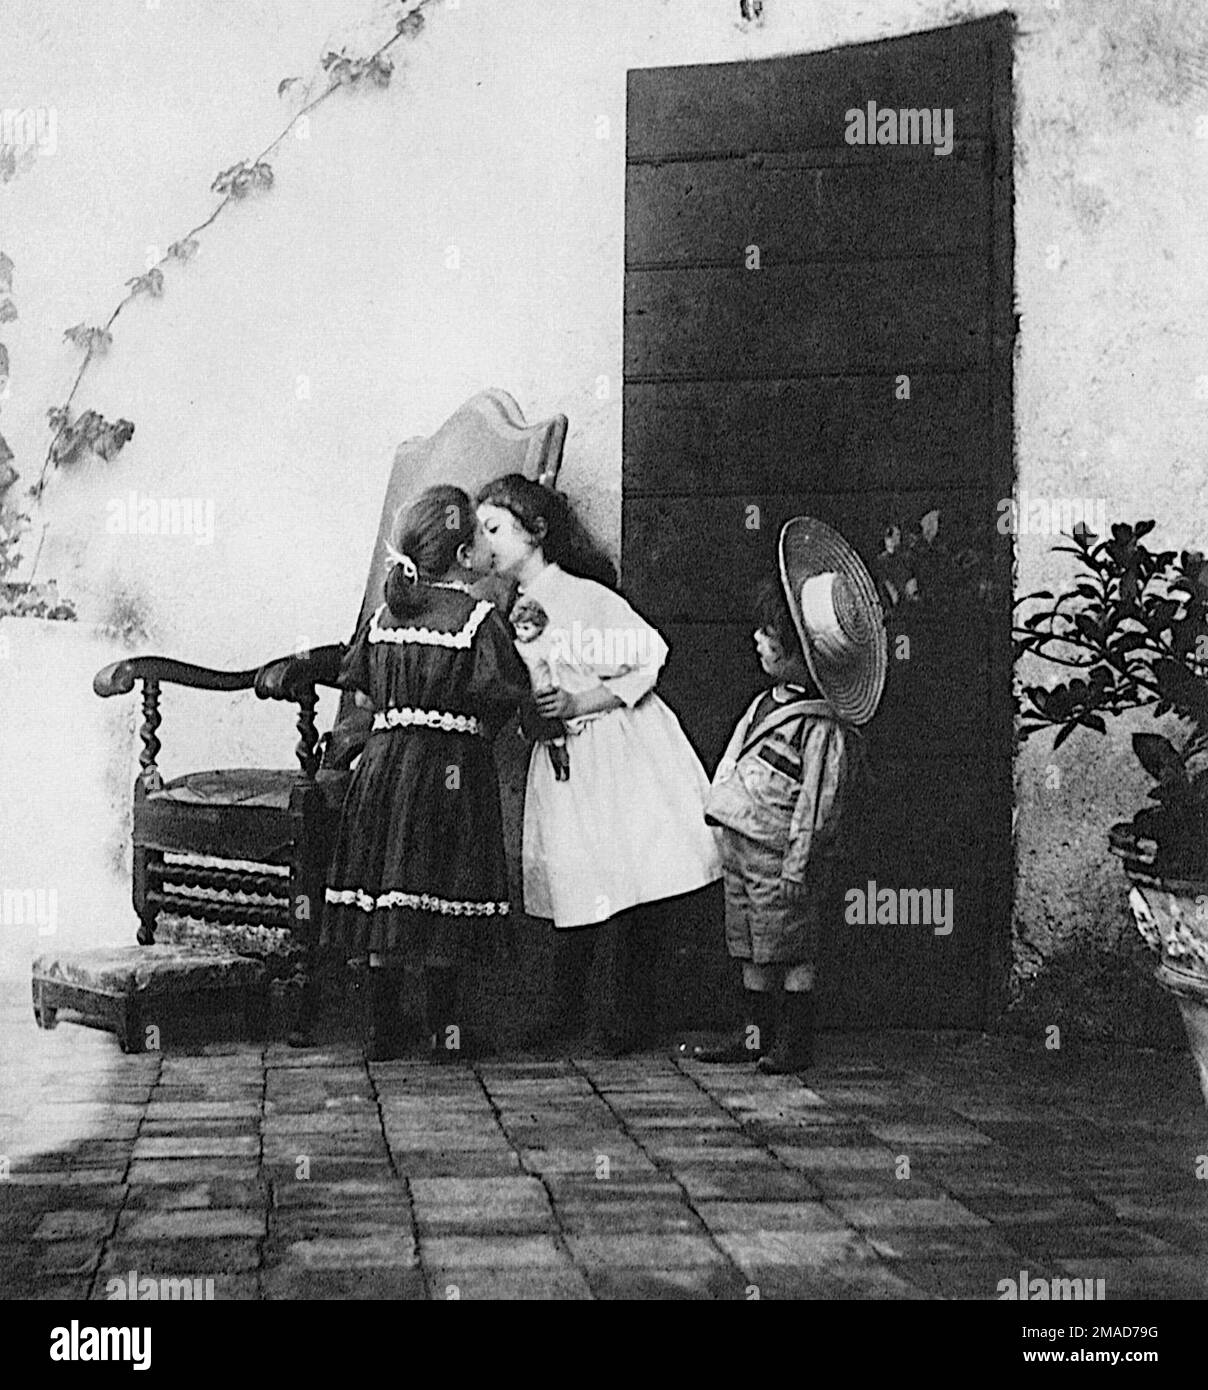 Giuseppe Primoli - El beso - 1890-1895 Dos chicas jóvenes intercambian un beso con un niño pequeño en la atención rapt. Foto de stock